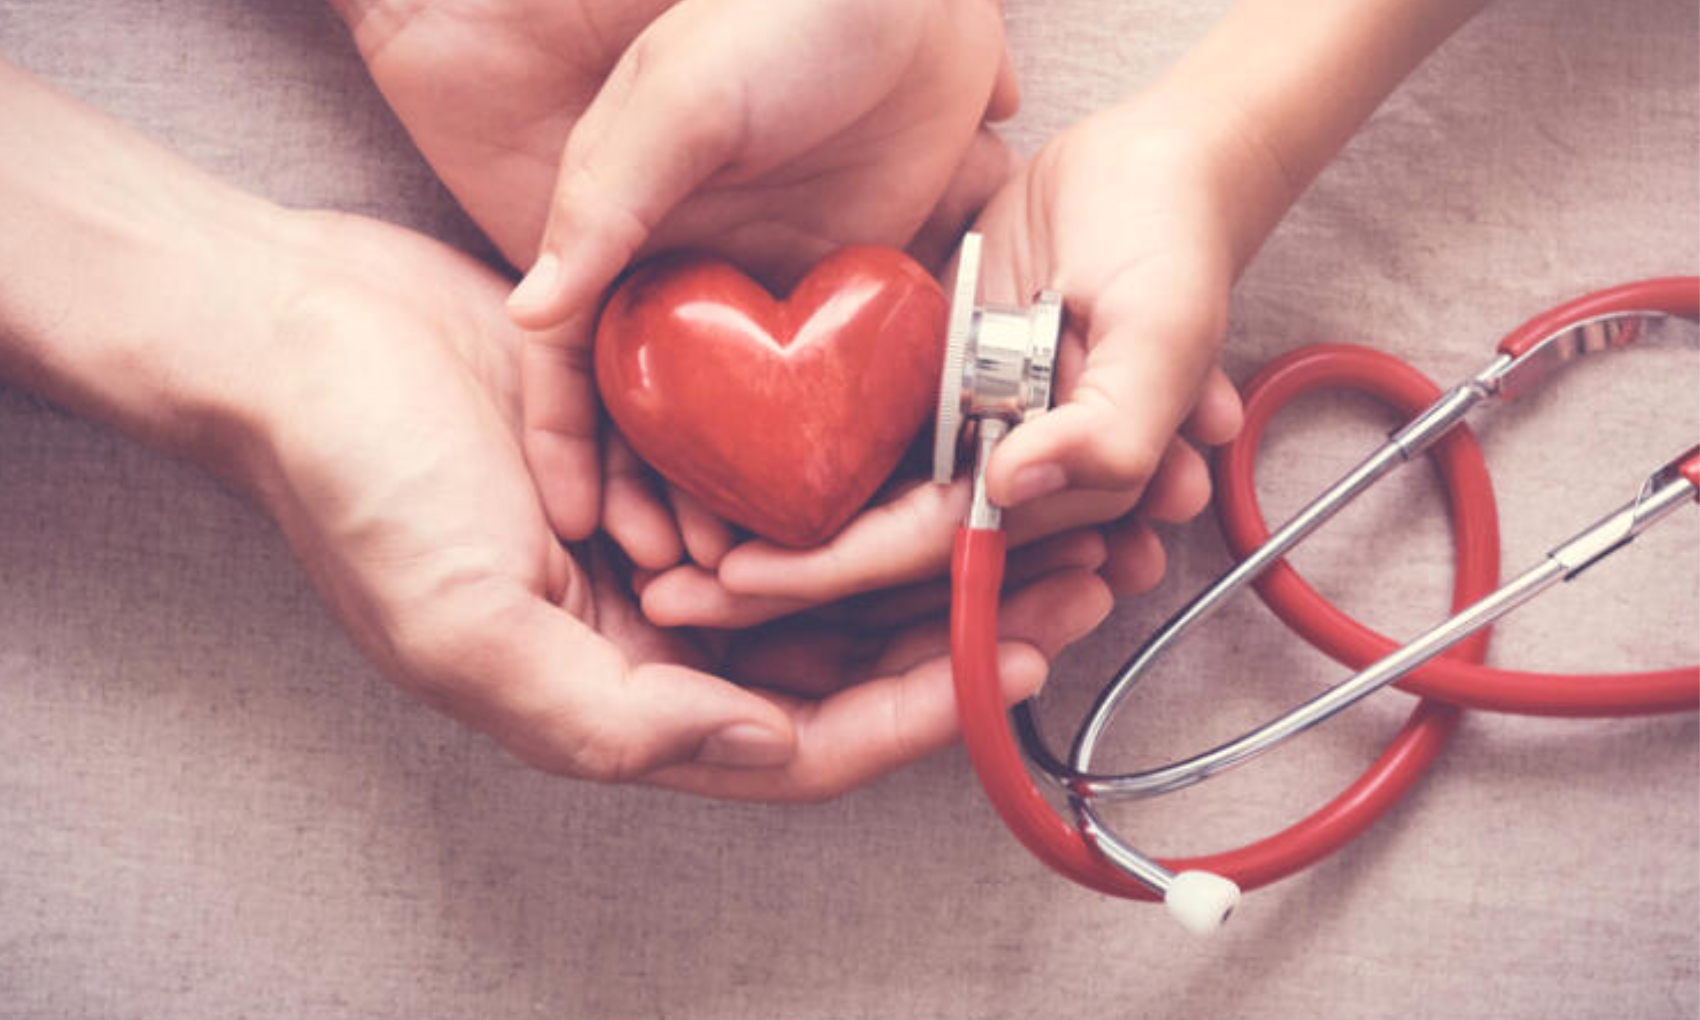 Heart Attack Sign in Winter: सर्दियों में अपने दिल का रखें ज्यादा ख्याल, जानें हार्ट अटैक के ये लक्षण!